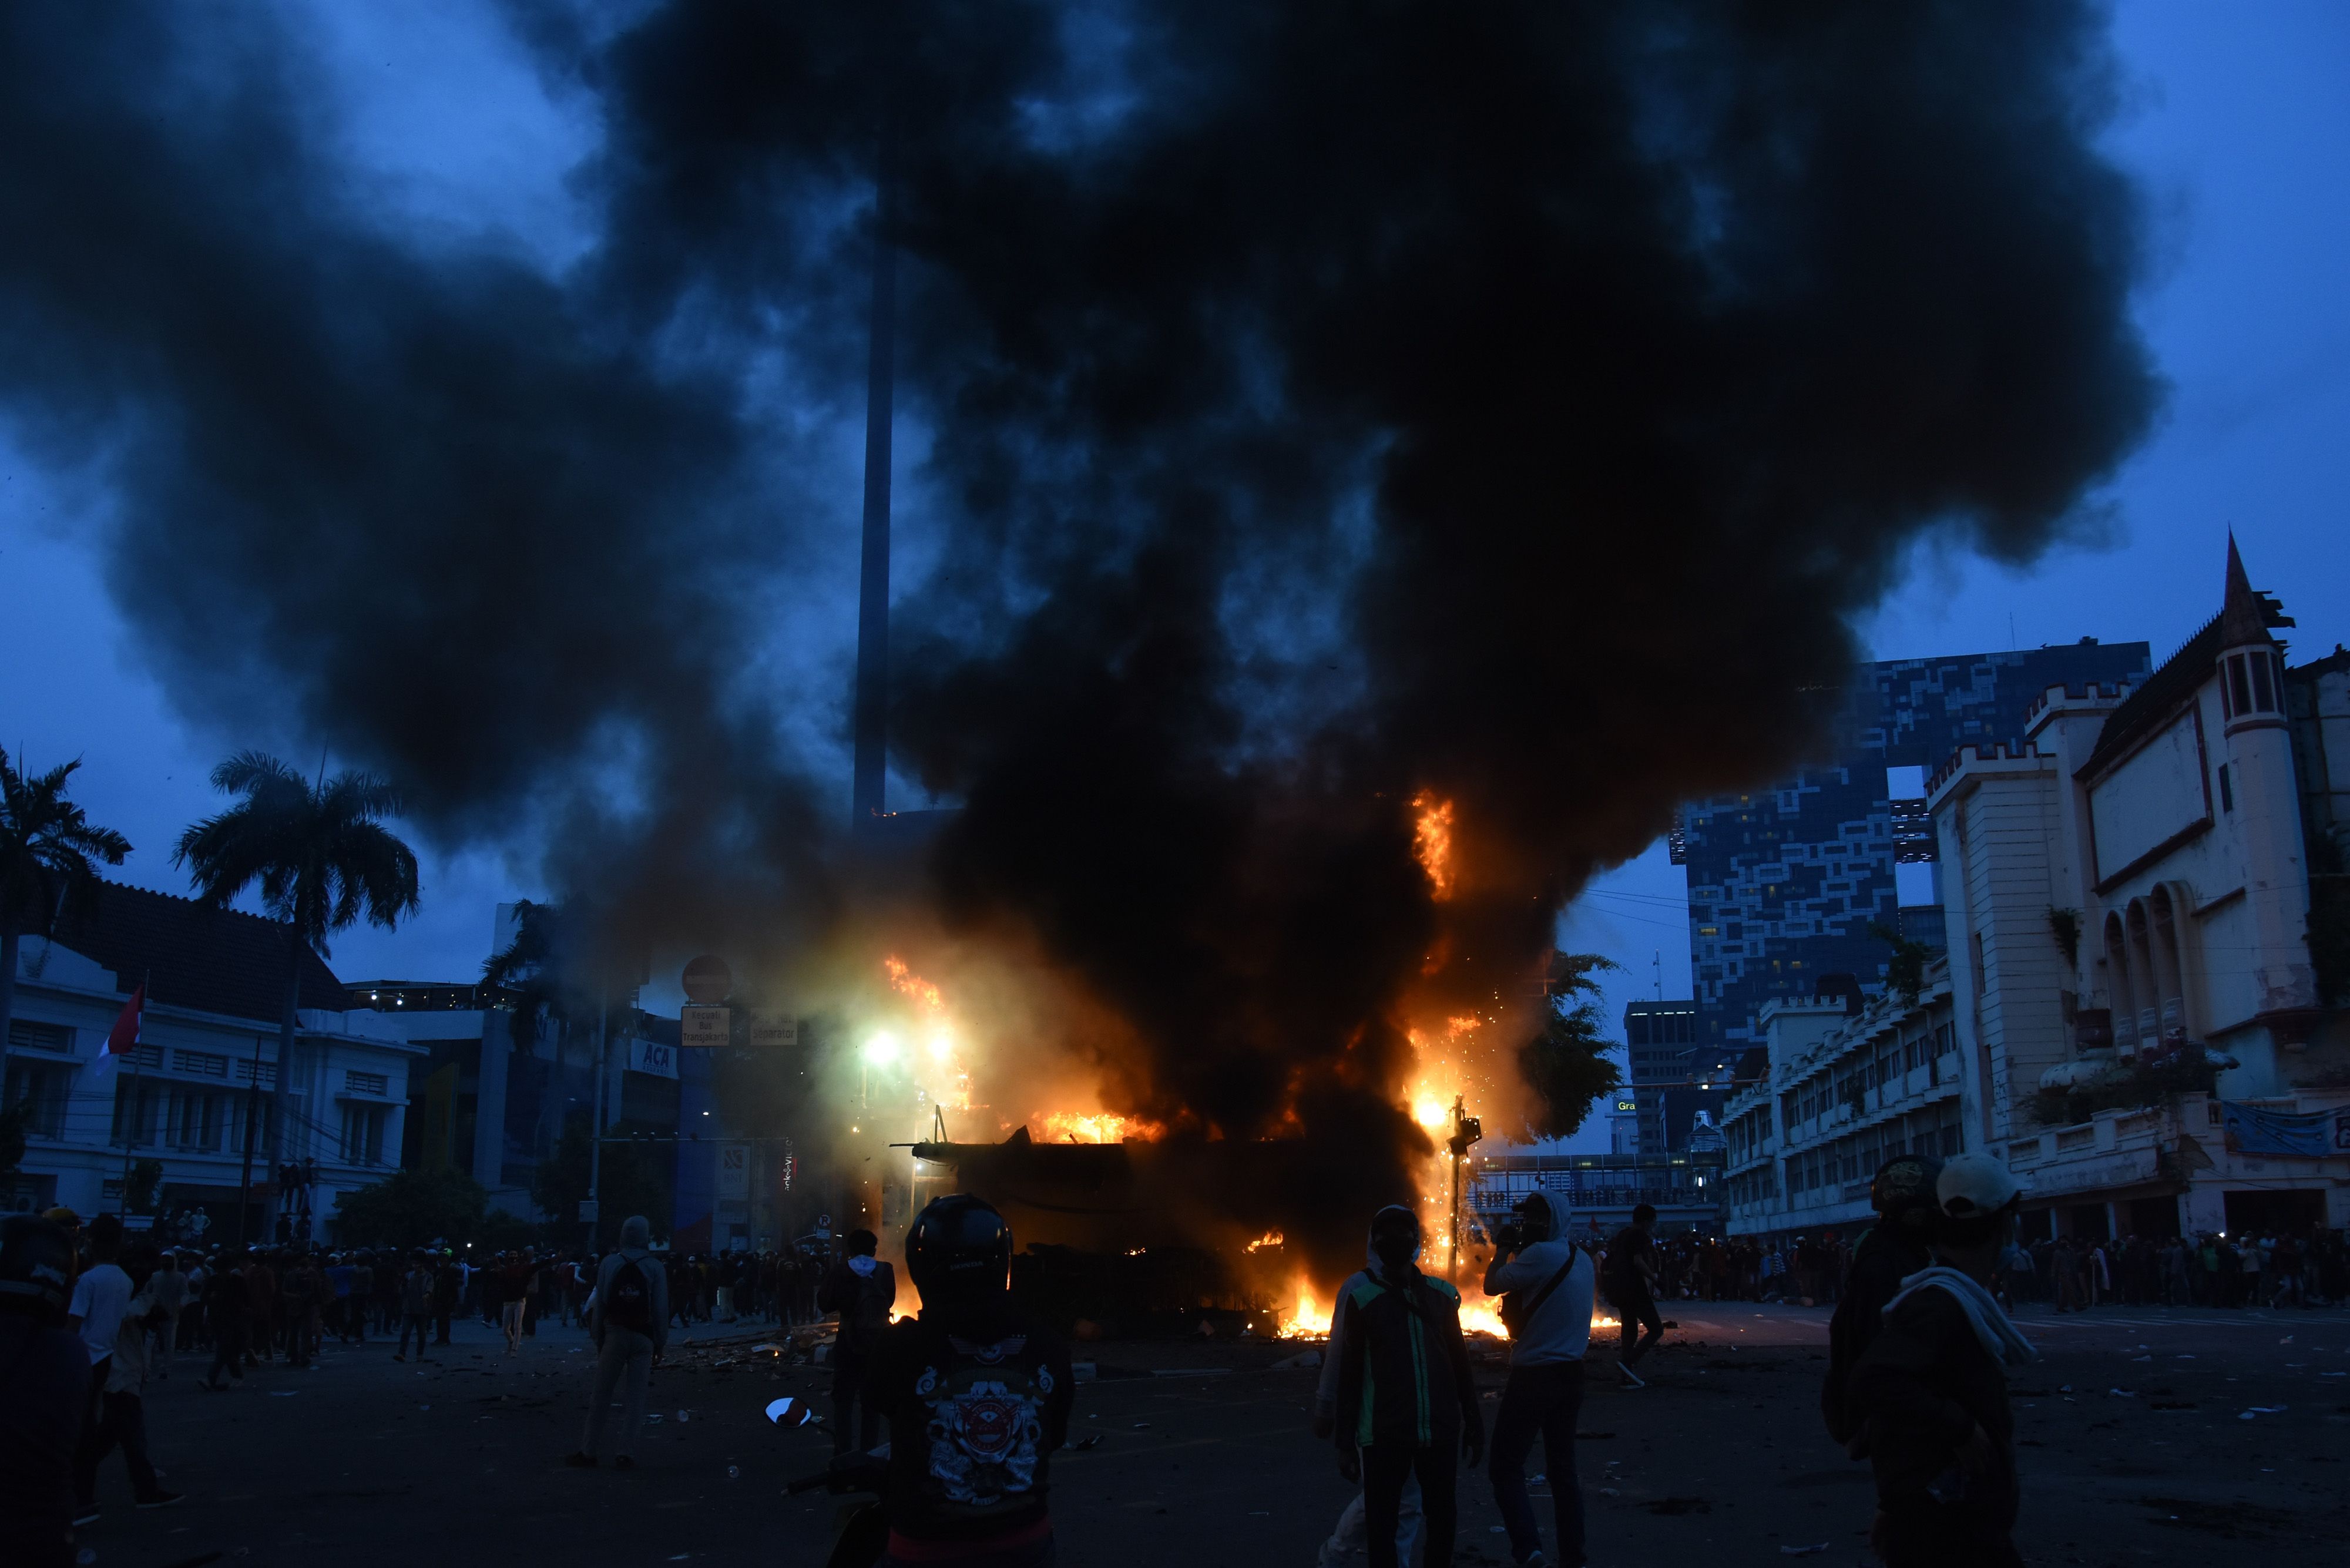 Sebuah pos polisi dibakar pengunjuk rasa yang menolak pengesahan Omnibus Law UU Cipta Kerja saat bentrok dengan polisi di kawasan Harmoni, Jakarta, Kamis (8/10/2020). Unjuk rasa tersebut berakhir ricuh dan mengakibatkan sejumlah fasilitas umum rusak. ANTARA FOTO/Indrianto Eko Suwarso/aww.